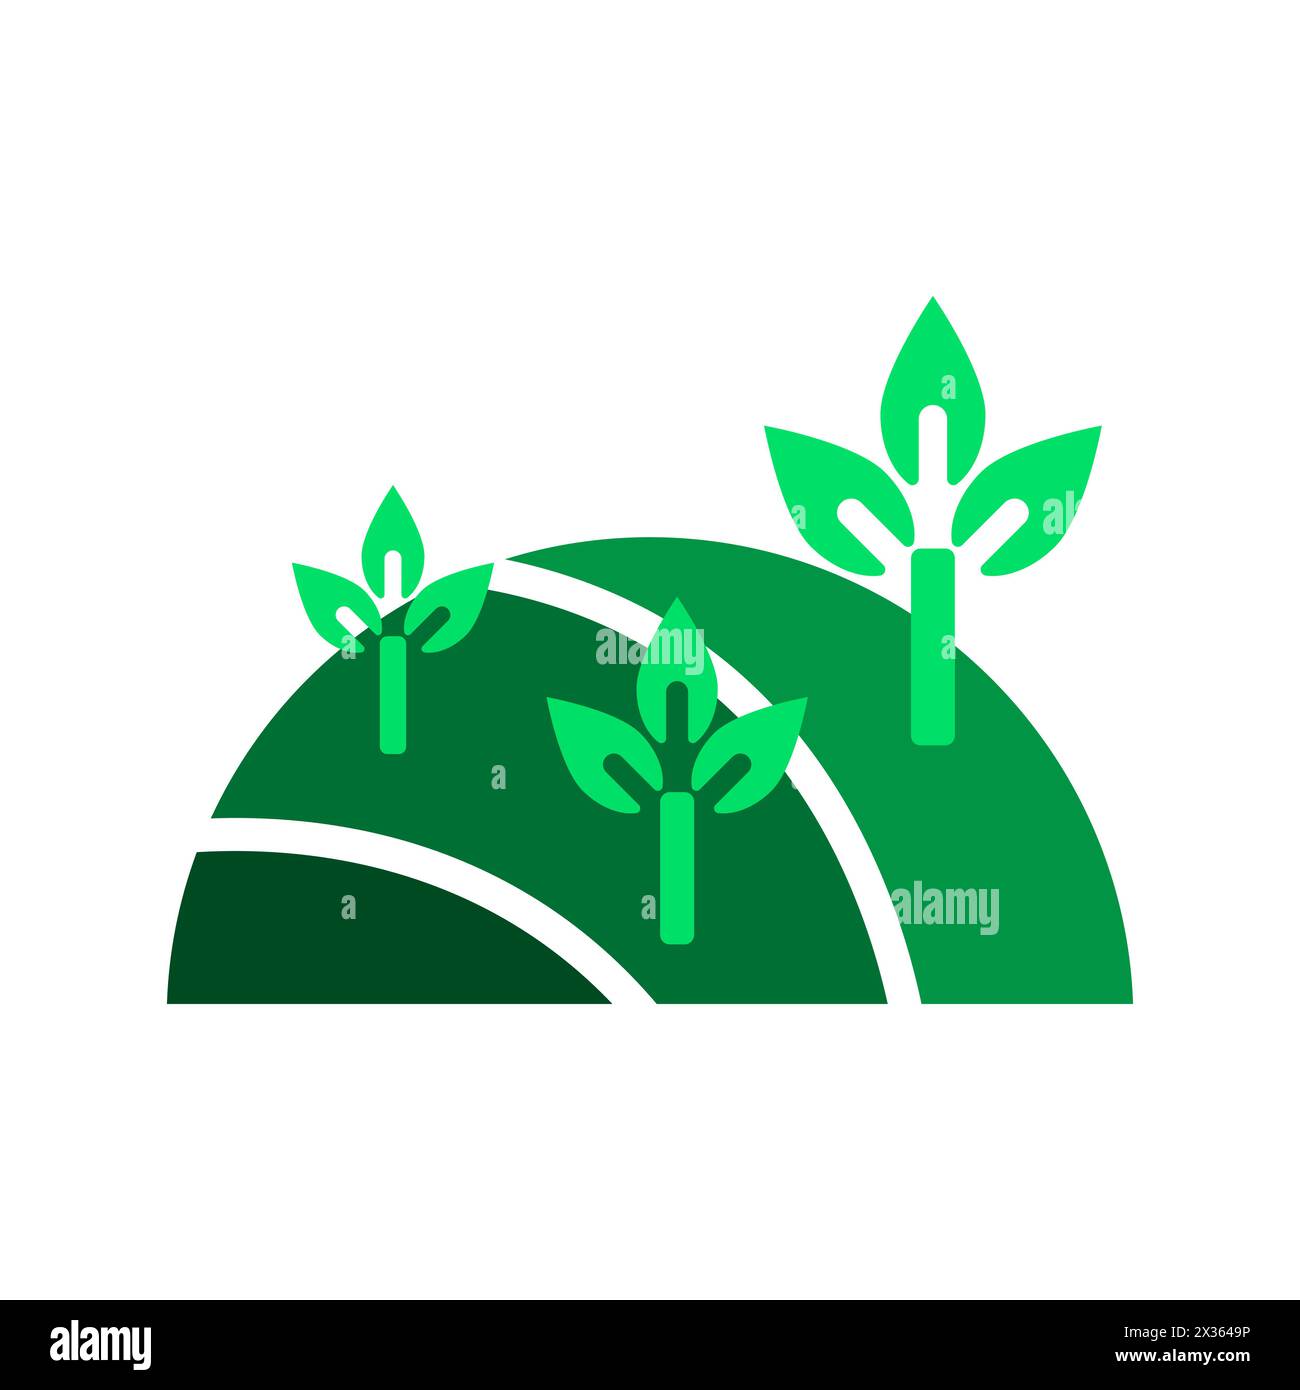 Des collines verdoyantes font germer une nouvelle vie. La croissance écologique symbolise le renouvellement. Message de protection de la terre transmis. Illustration vectorielle. SPE 10. Illustration de Vecteur